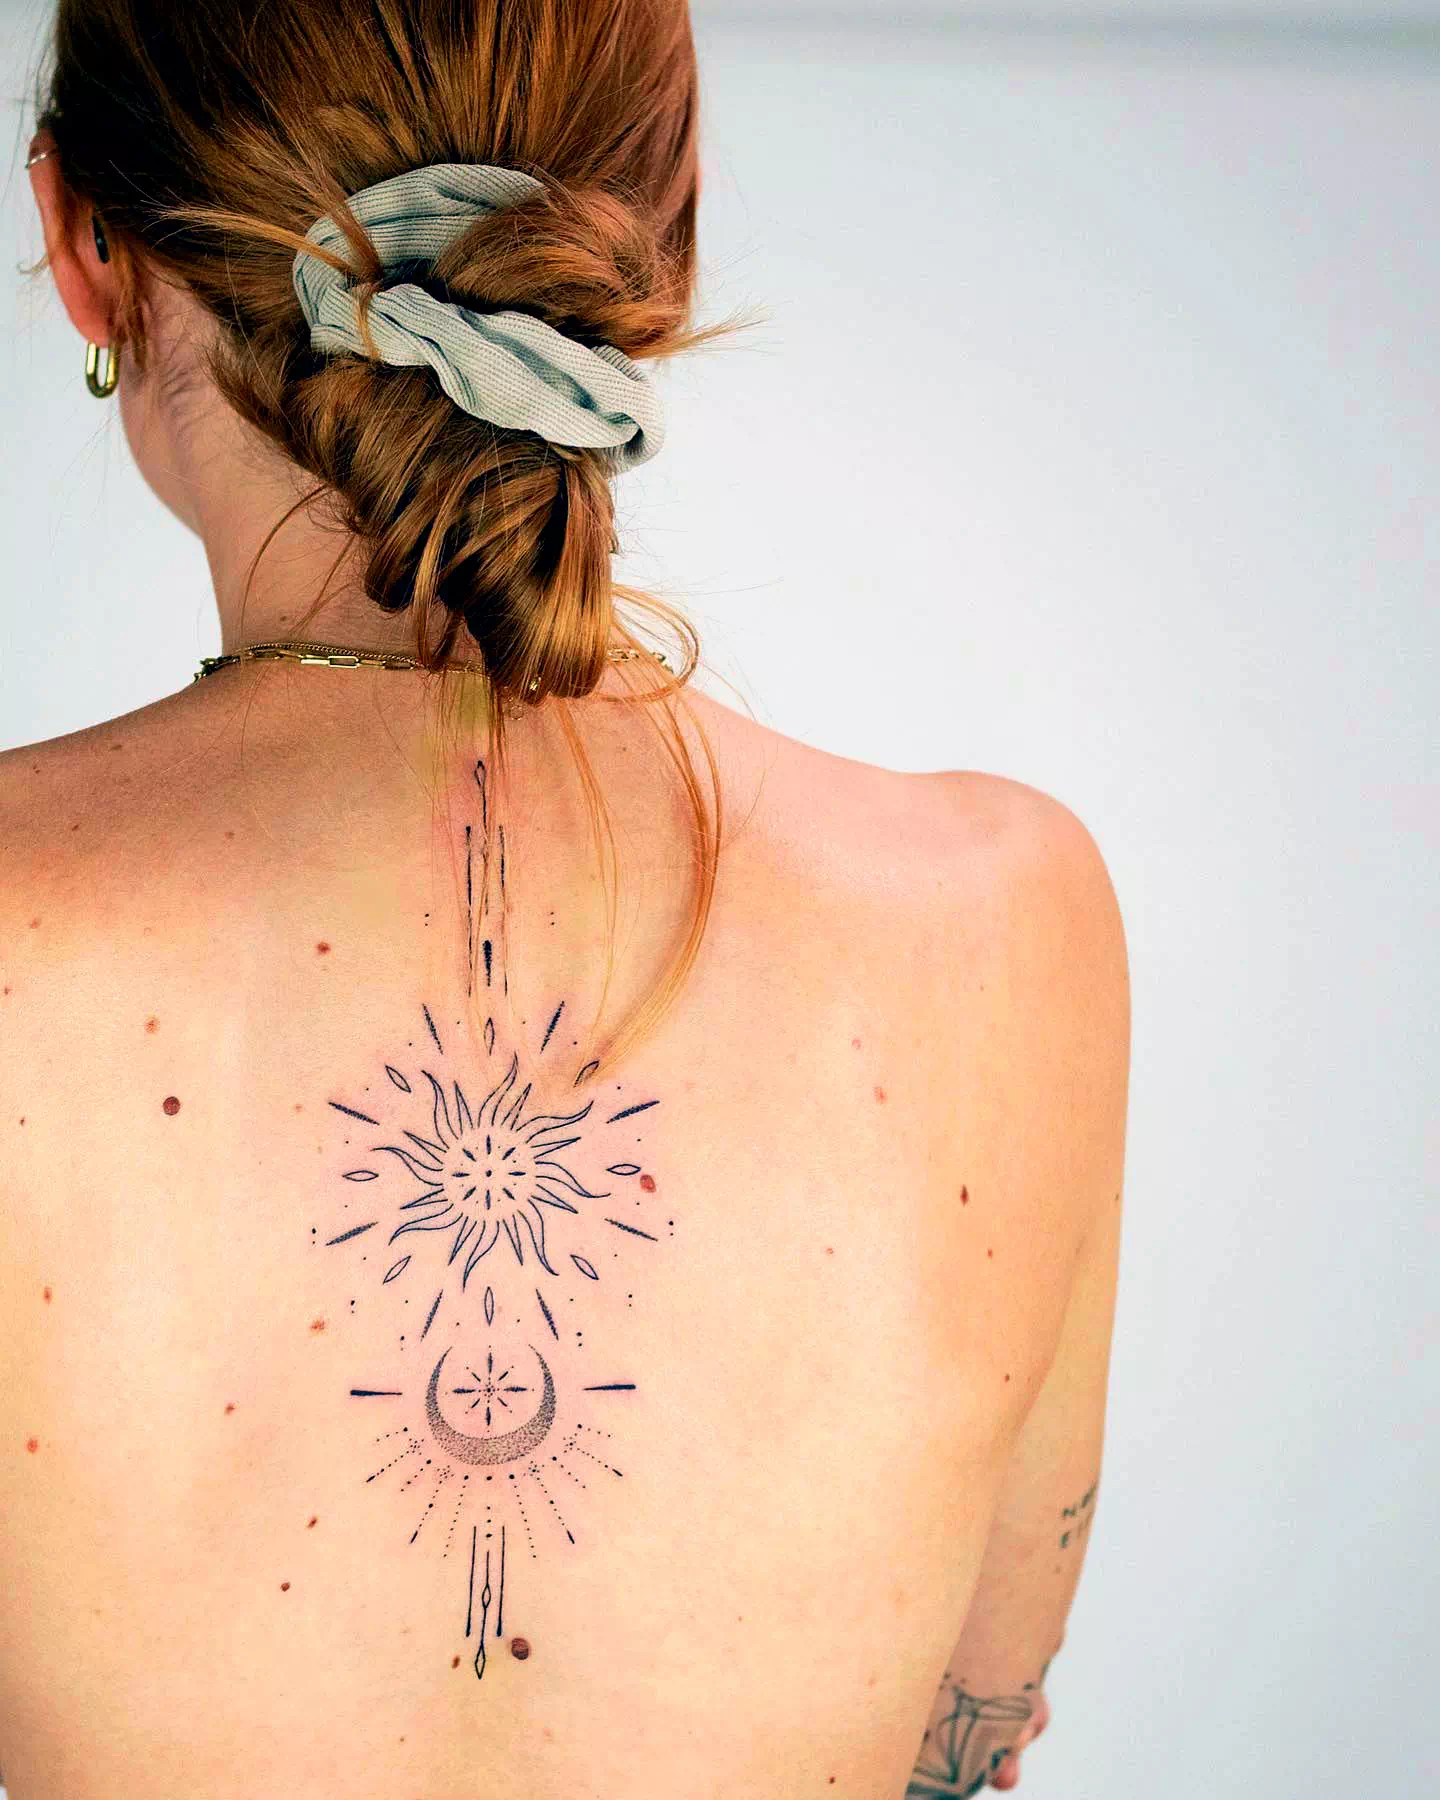 Diseños sencillos de tatuajes de sol y luna 2